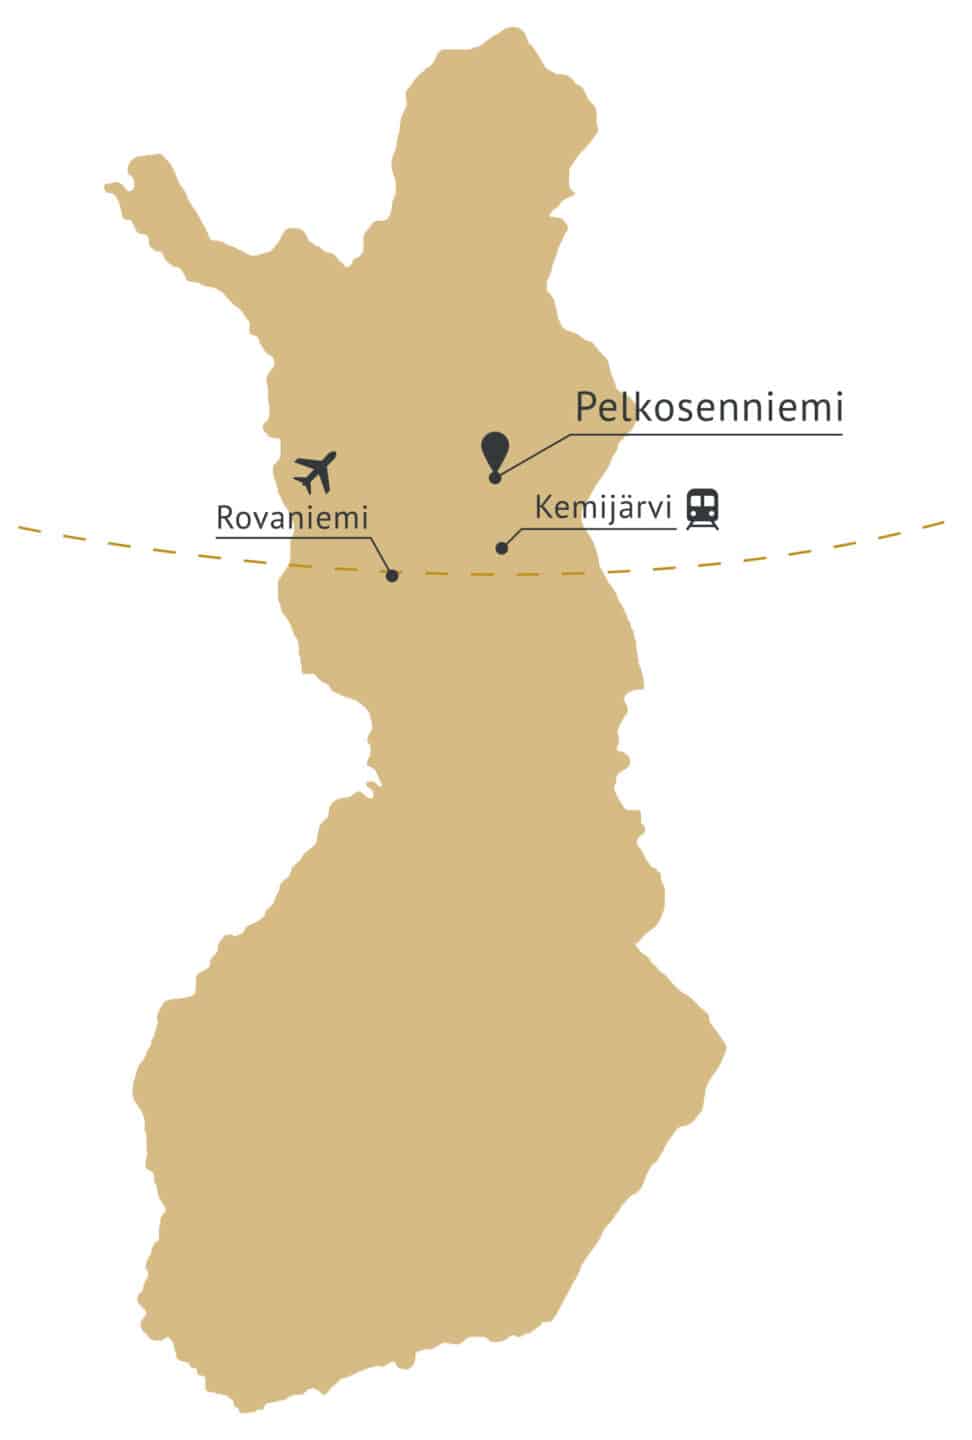 Suomen kartta, jossa Pelkosenniemi merkitty karttaan.